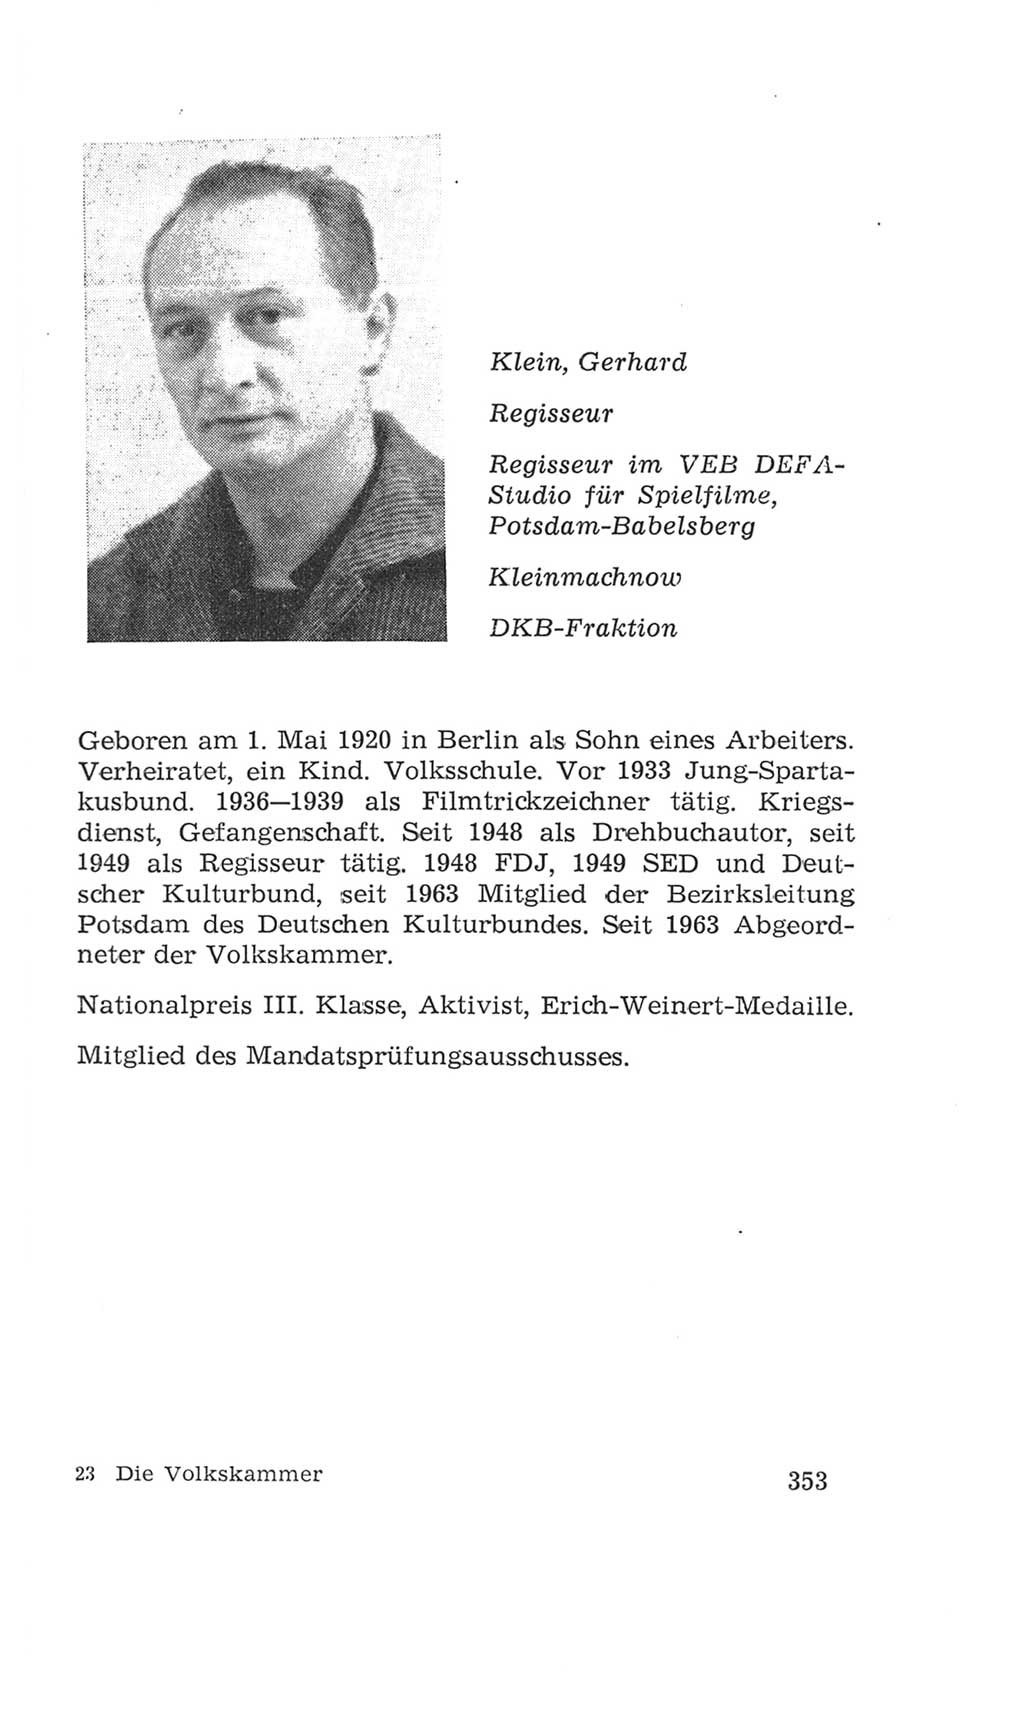 Volkskammer (VK) der Deutschen Demokratischen Republik (DDR), 4. Wahlperiode 1963-1967, Seite 353 (VK. DDR 4. WP. 1963-1967, S. 353)